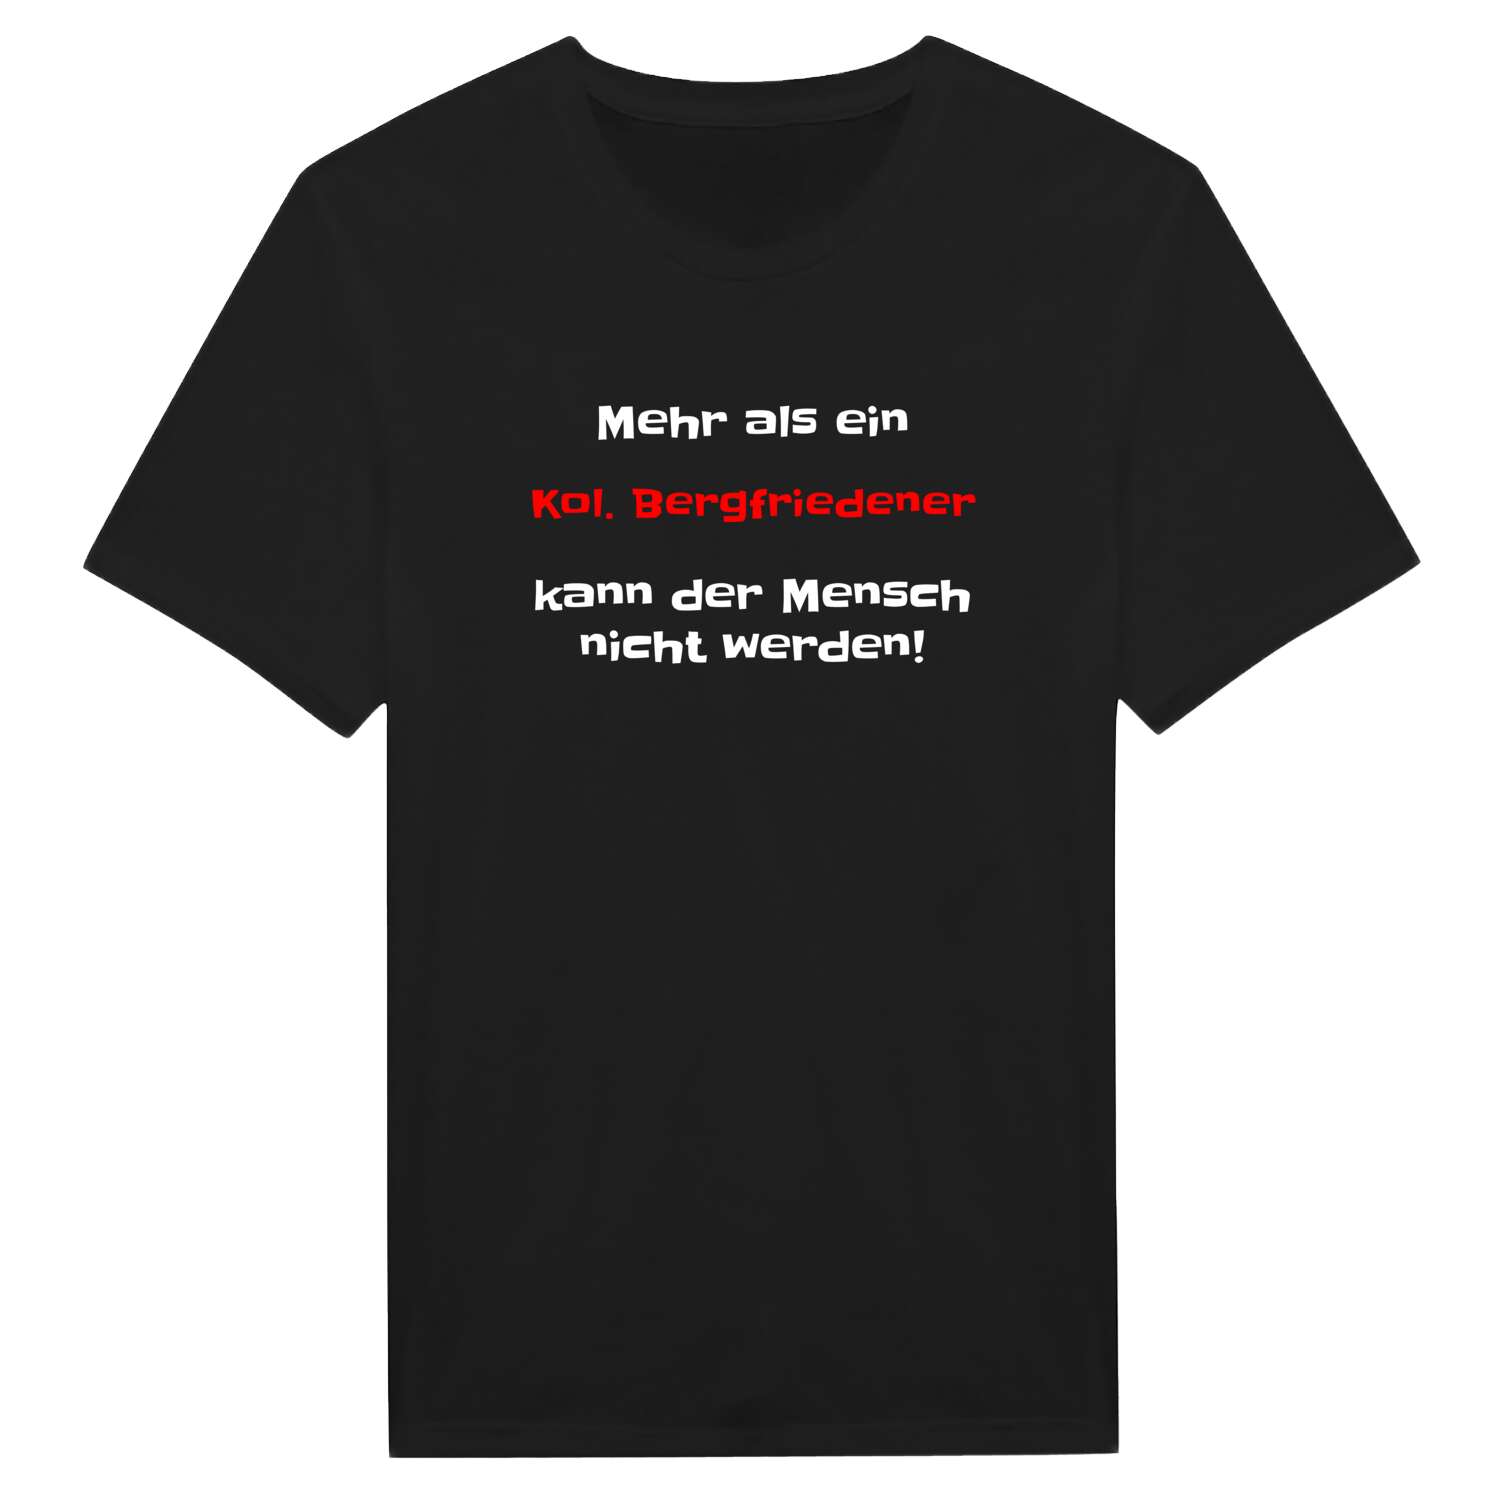 Kol. Bergfrieden T-Shirt »Mehr als ein«